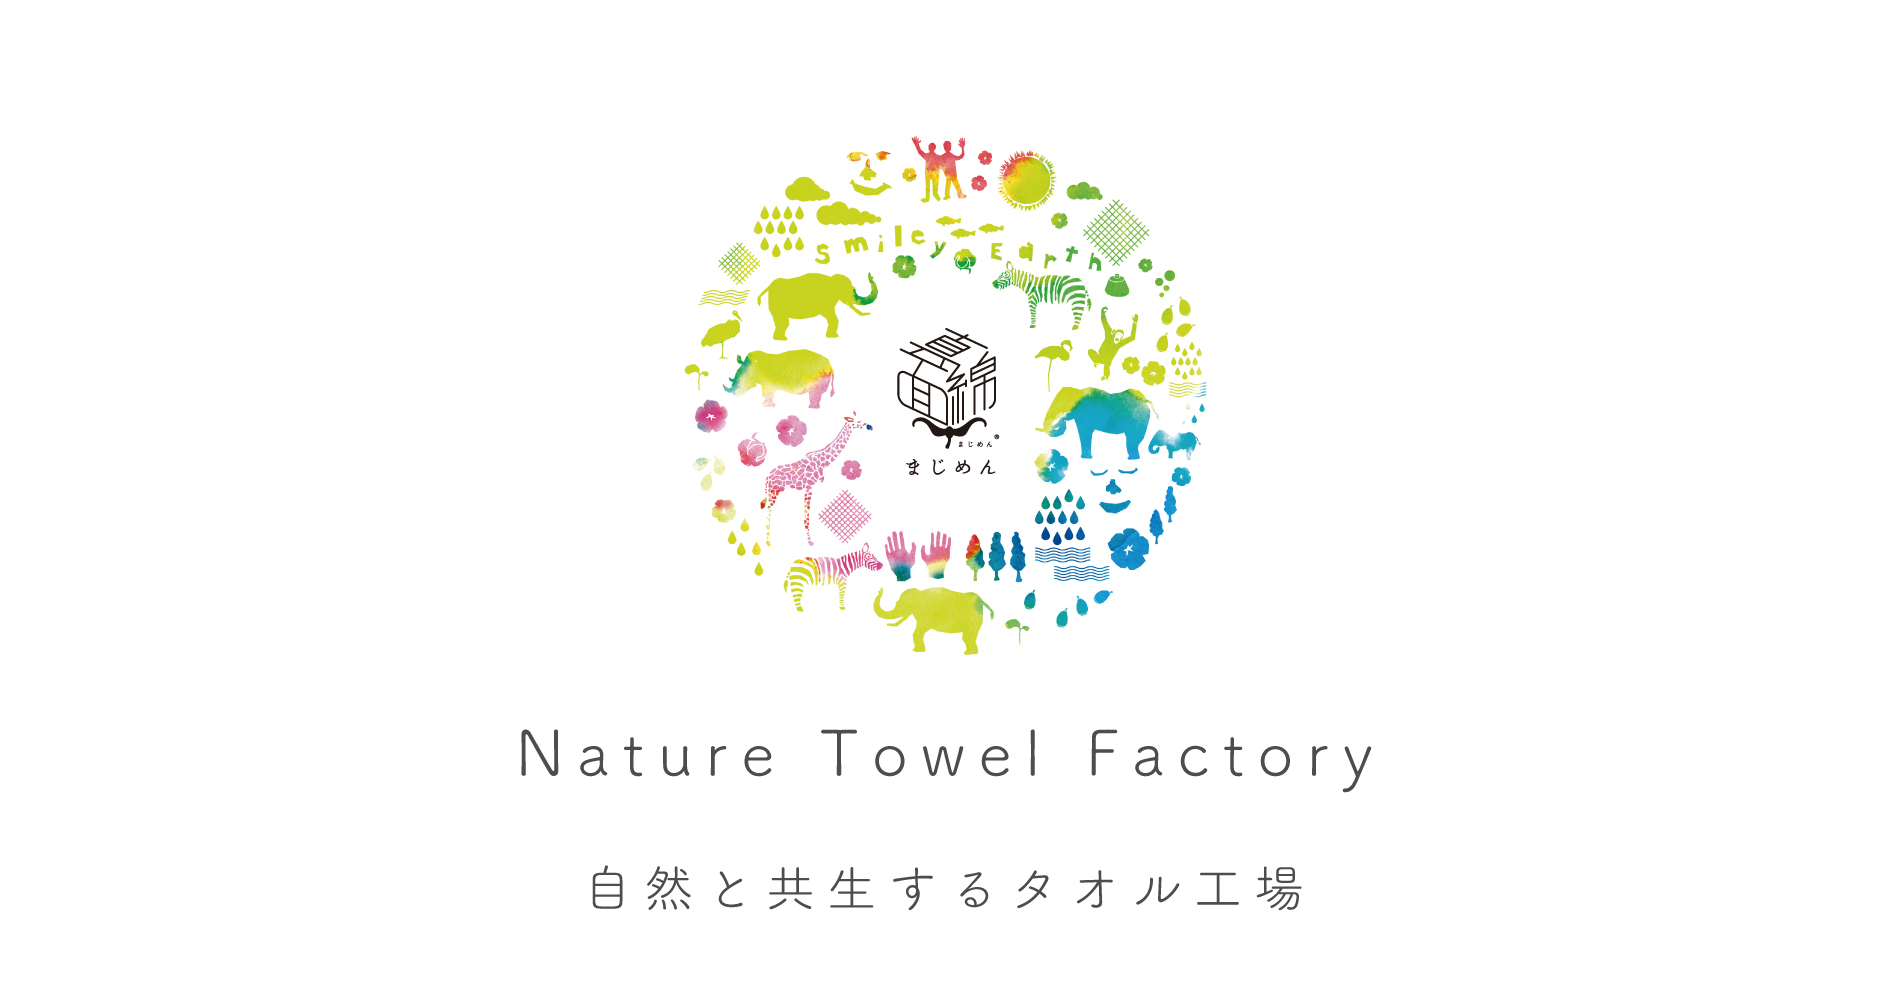 Nature Towel Factory事業